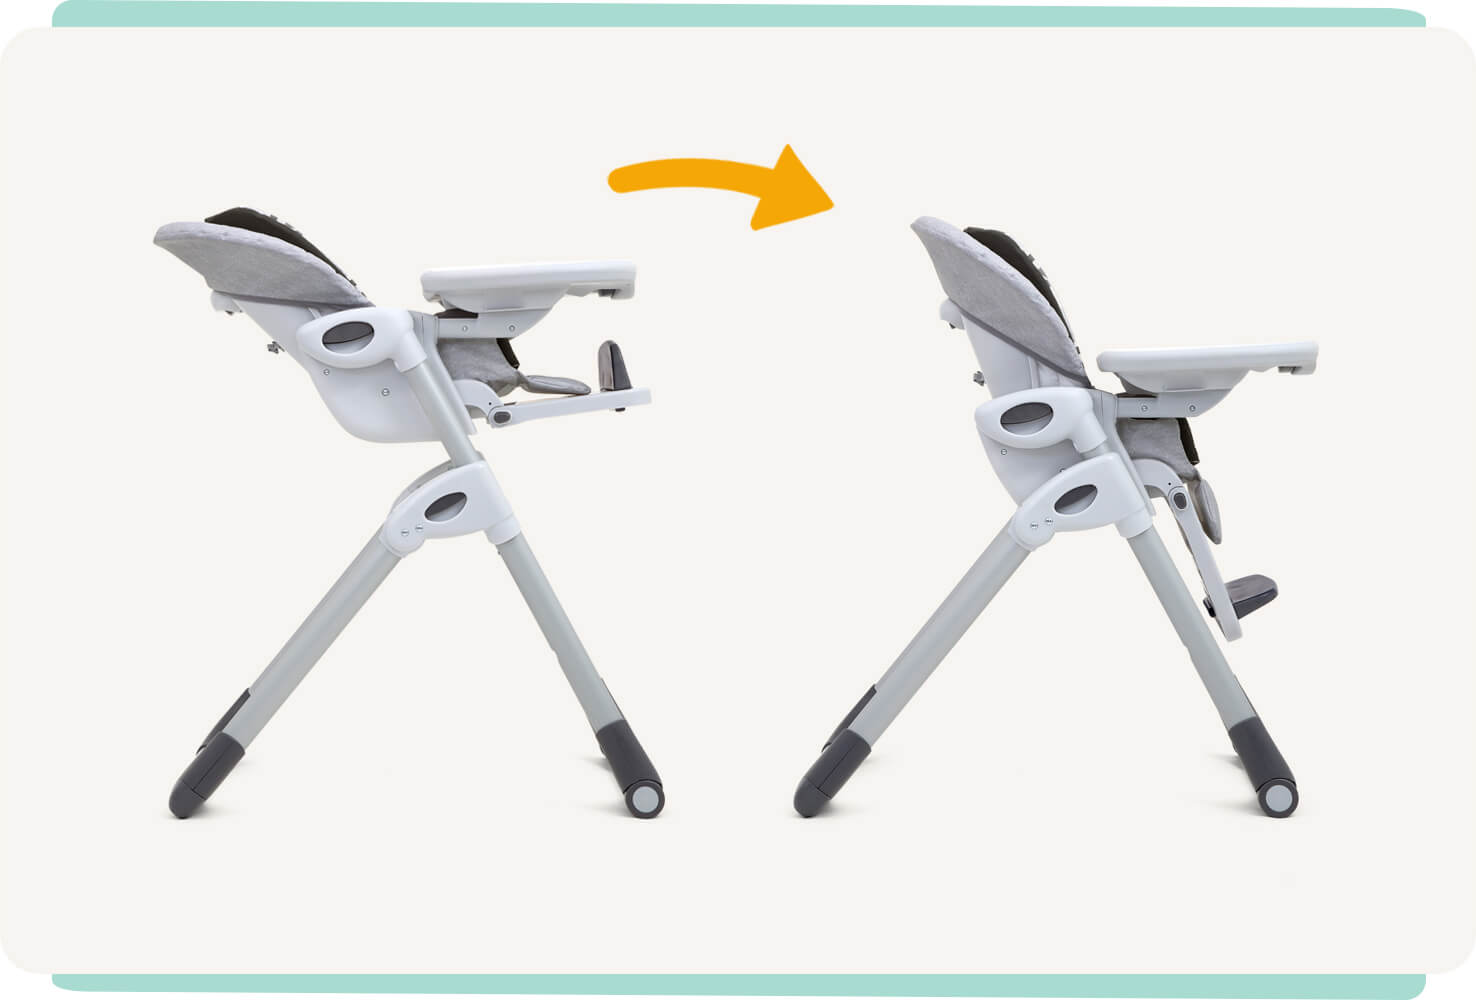 Deux chaises hautes Joie 2-en-1 Mimzy, coloris gris, côte à côte et de profil, montrant la hauteur maximale à gauche et la hauteur minimale à droite, avec une flèche orange entre les deux.